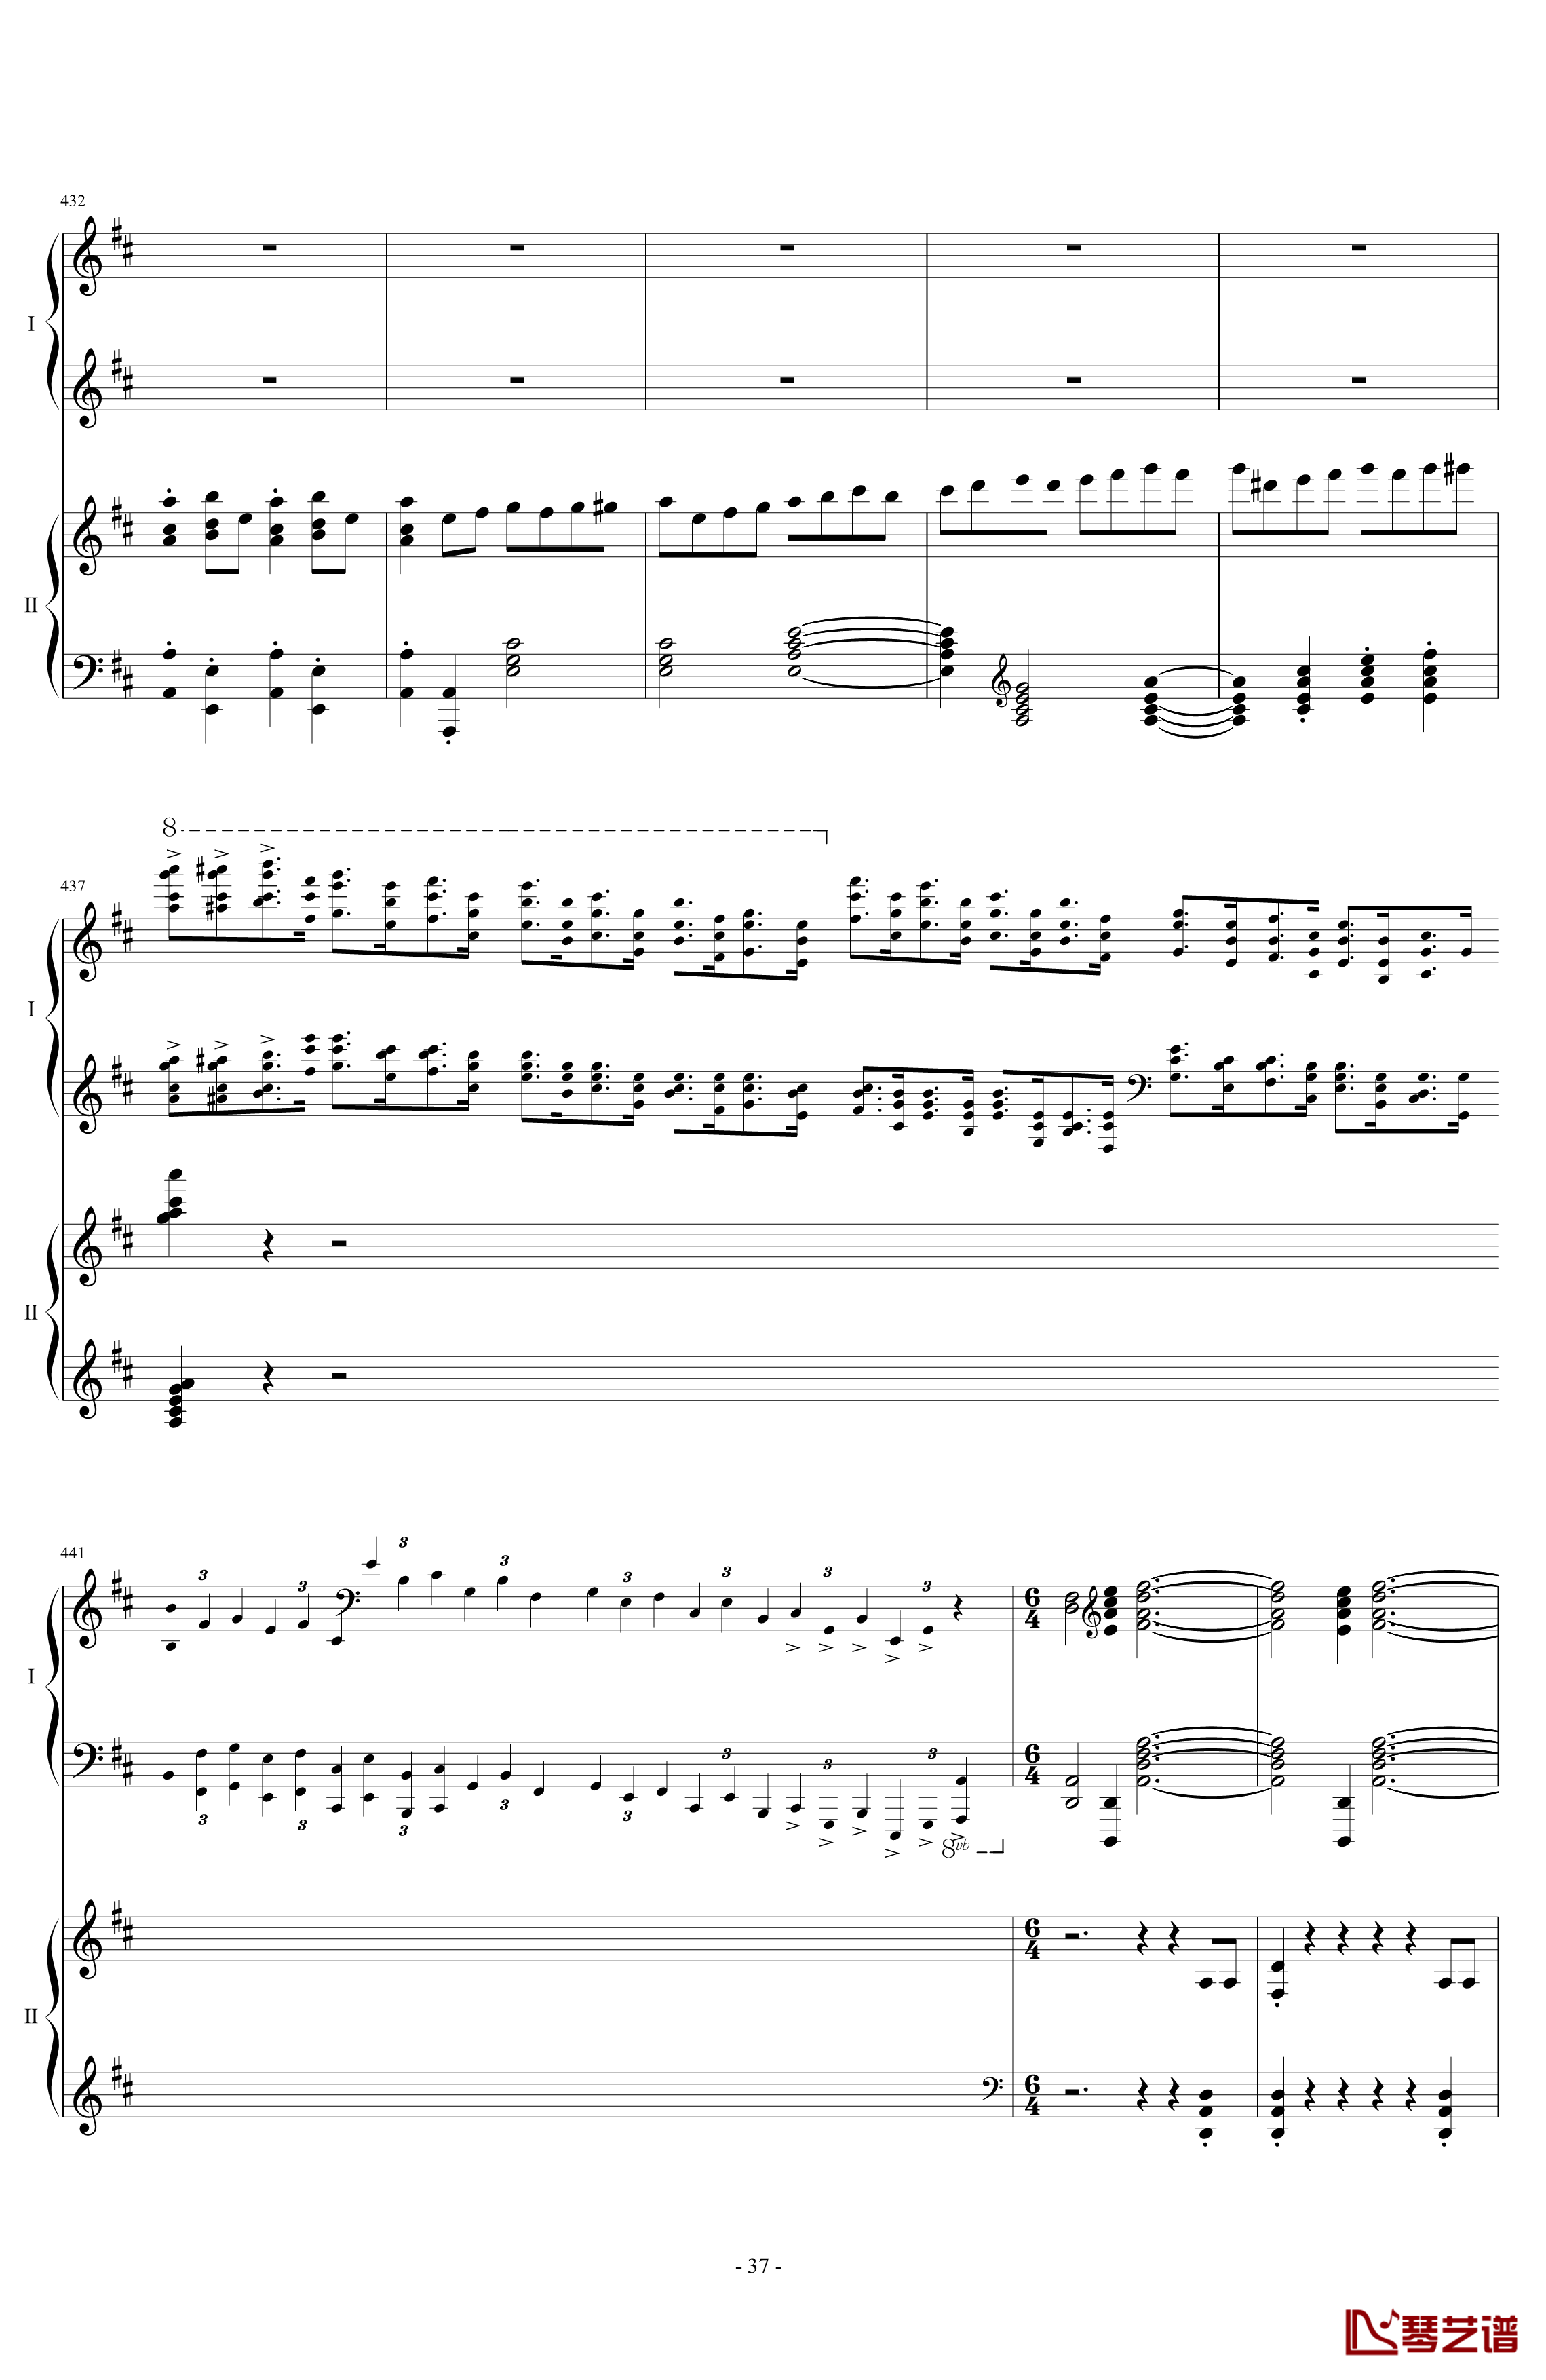 拉三第三乐章41页双钢琴钢琴谱-最难钢琴曲-拉赫马尼若夫37